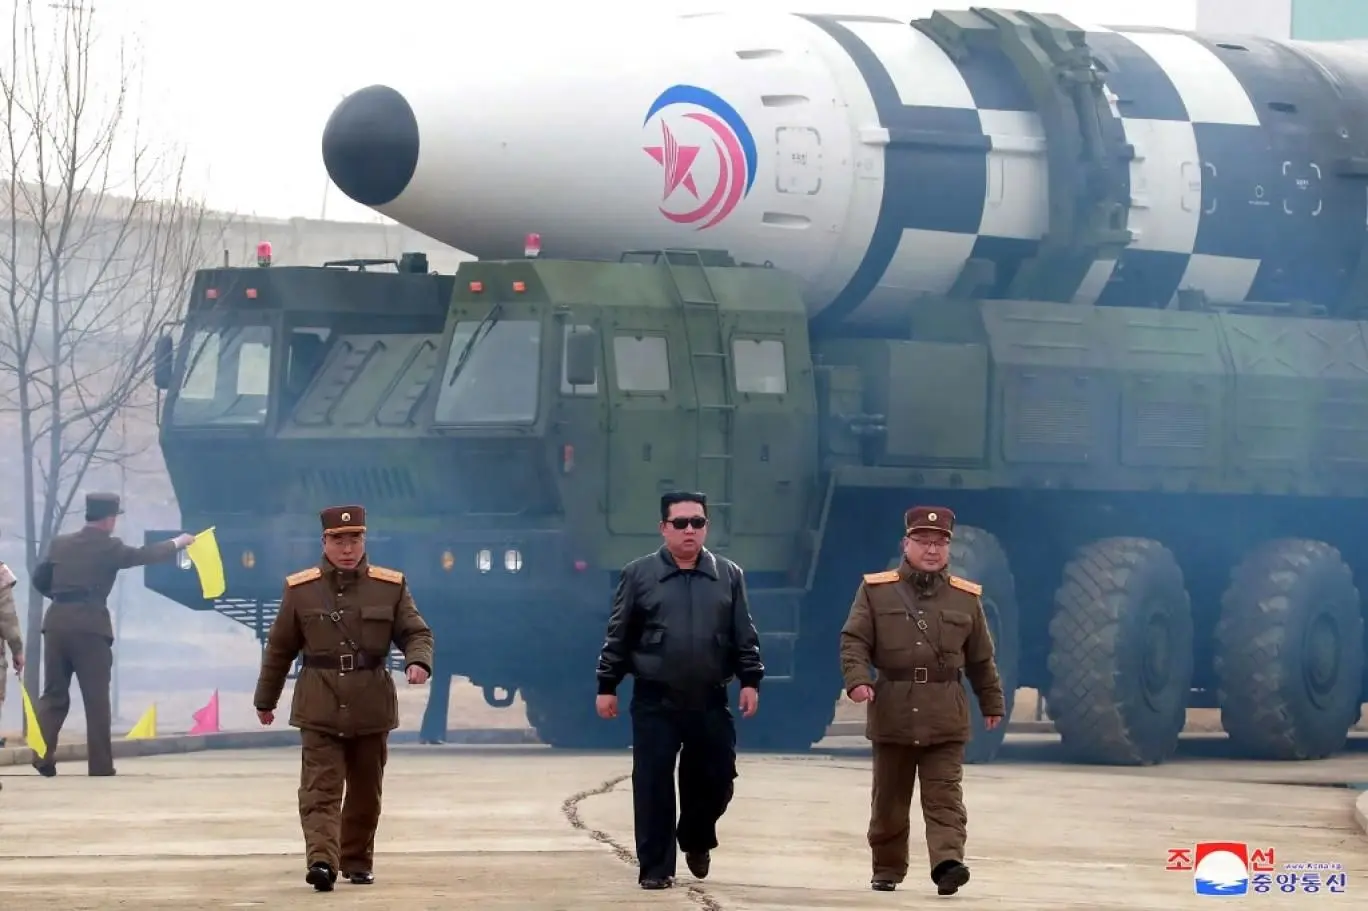 وزیر دفاع کره شمالی، آمریکا را تهدید کرد 